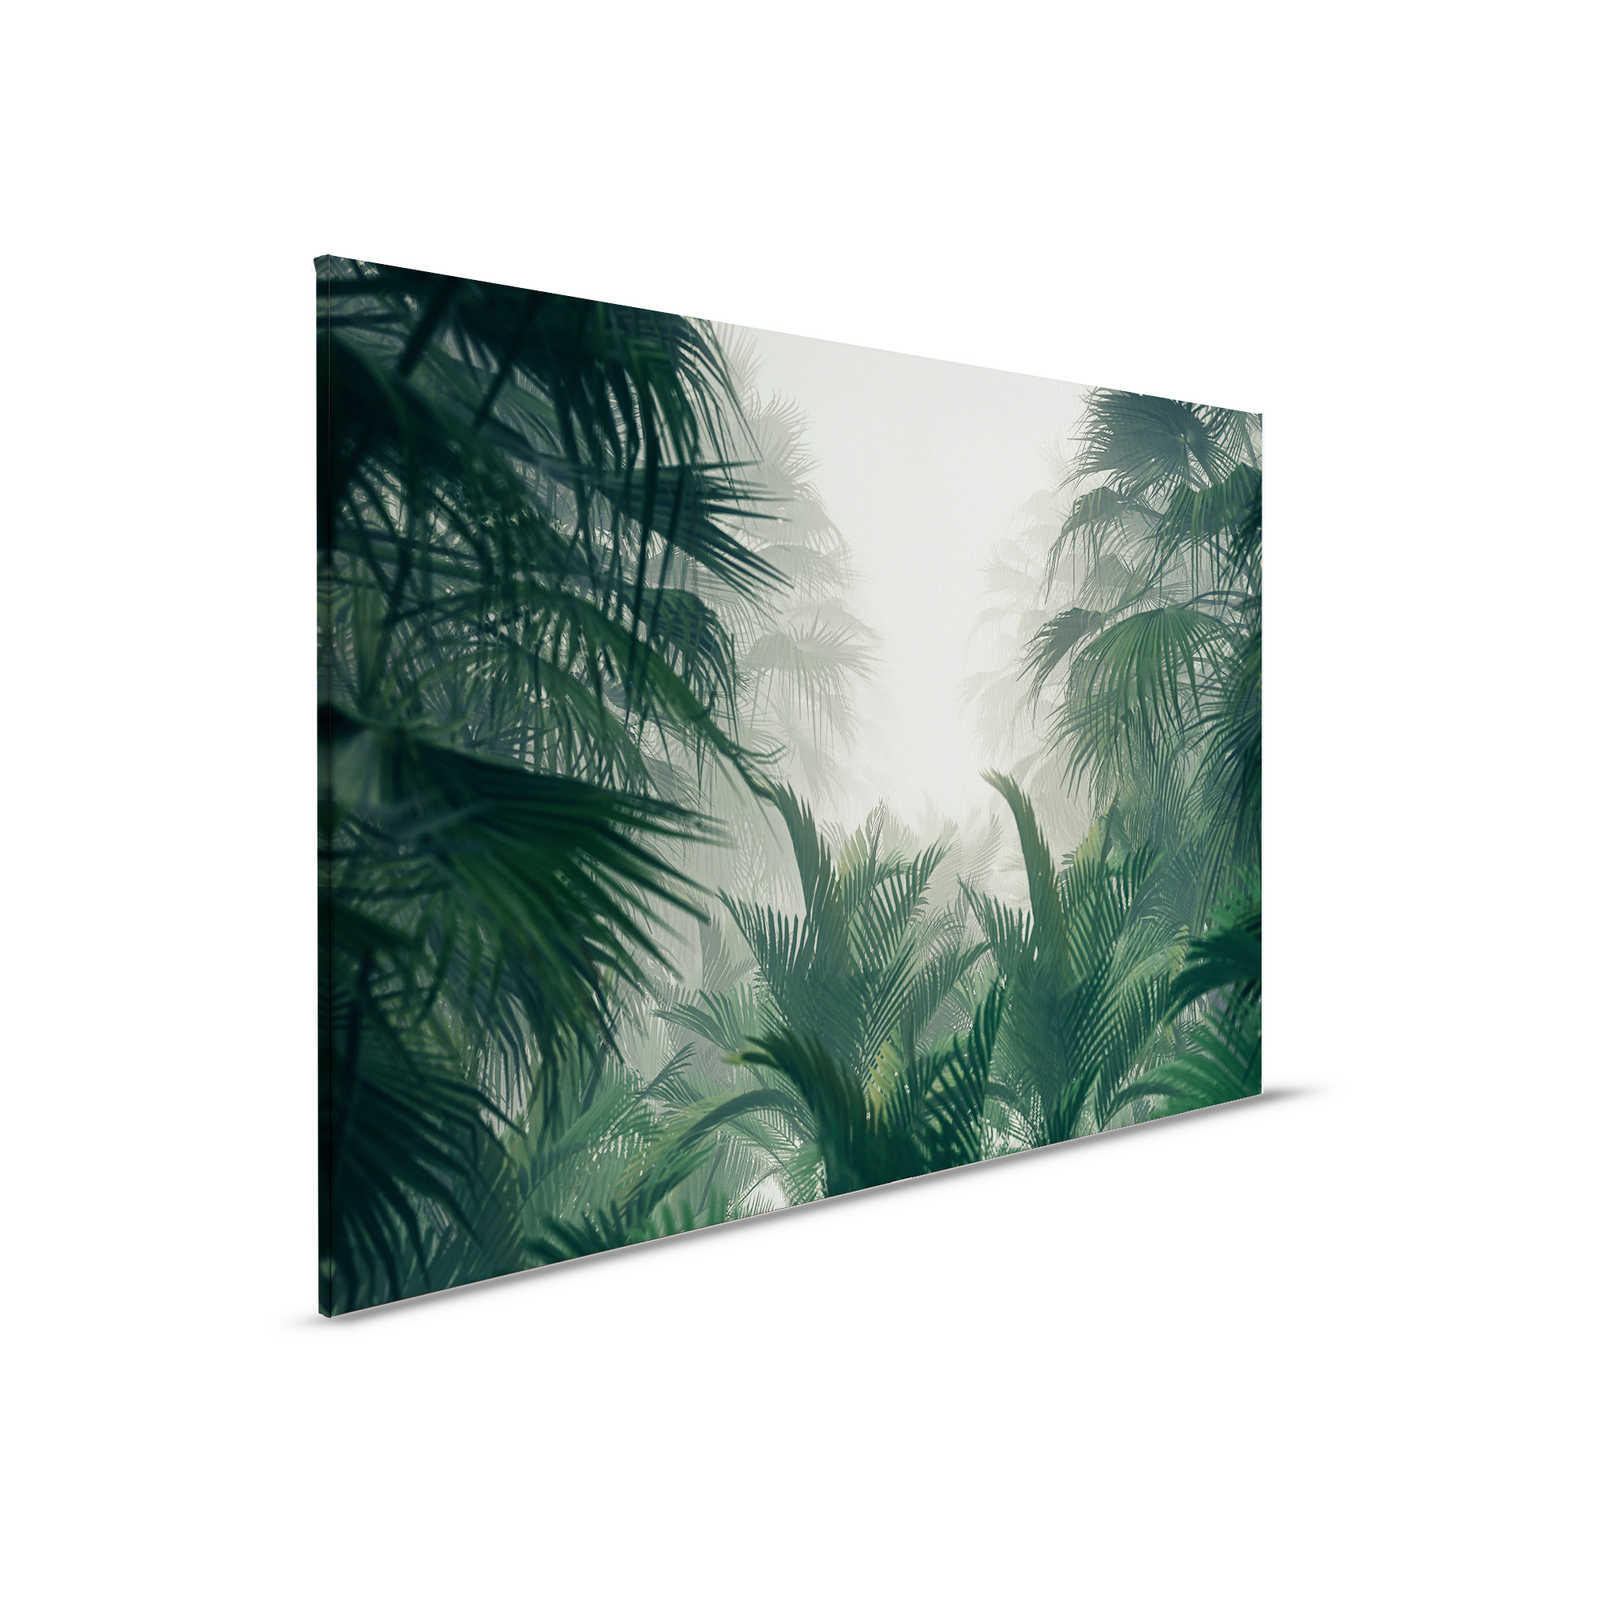 Leinwandbild mit Dschungelblick in der Regenzeit – 0,90 m x 0,60 m
